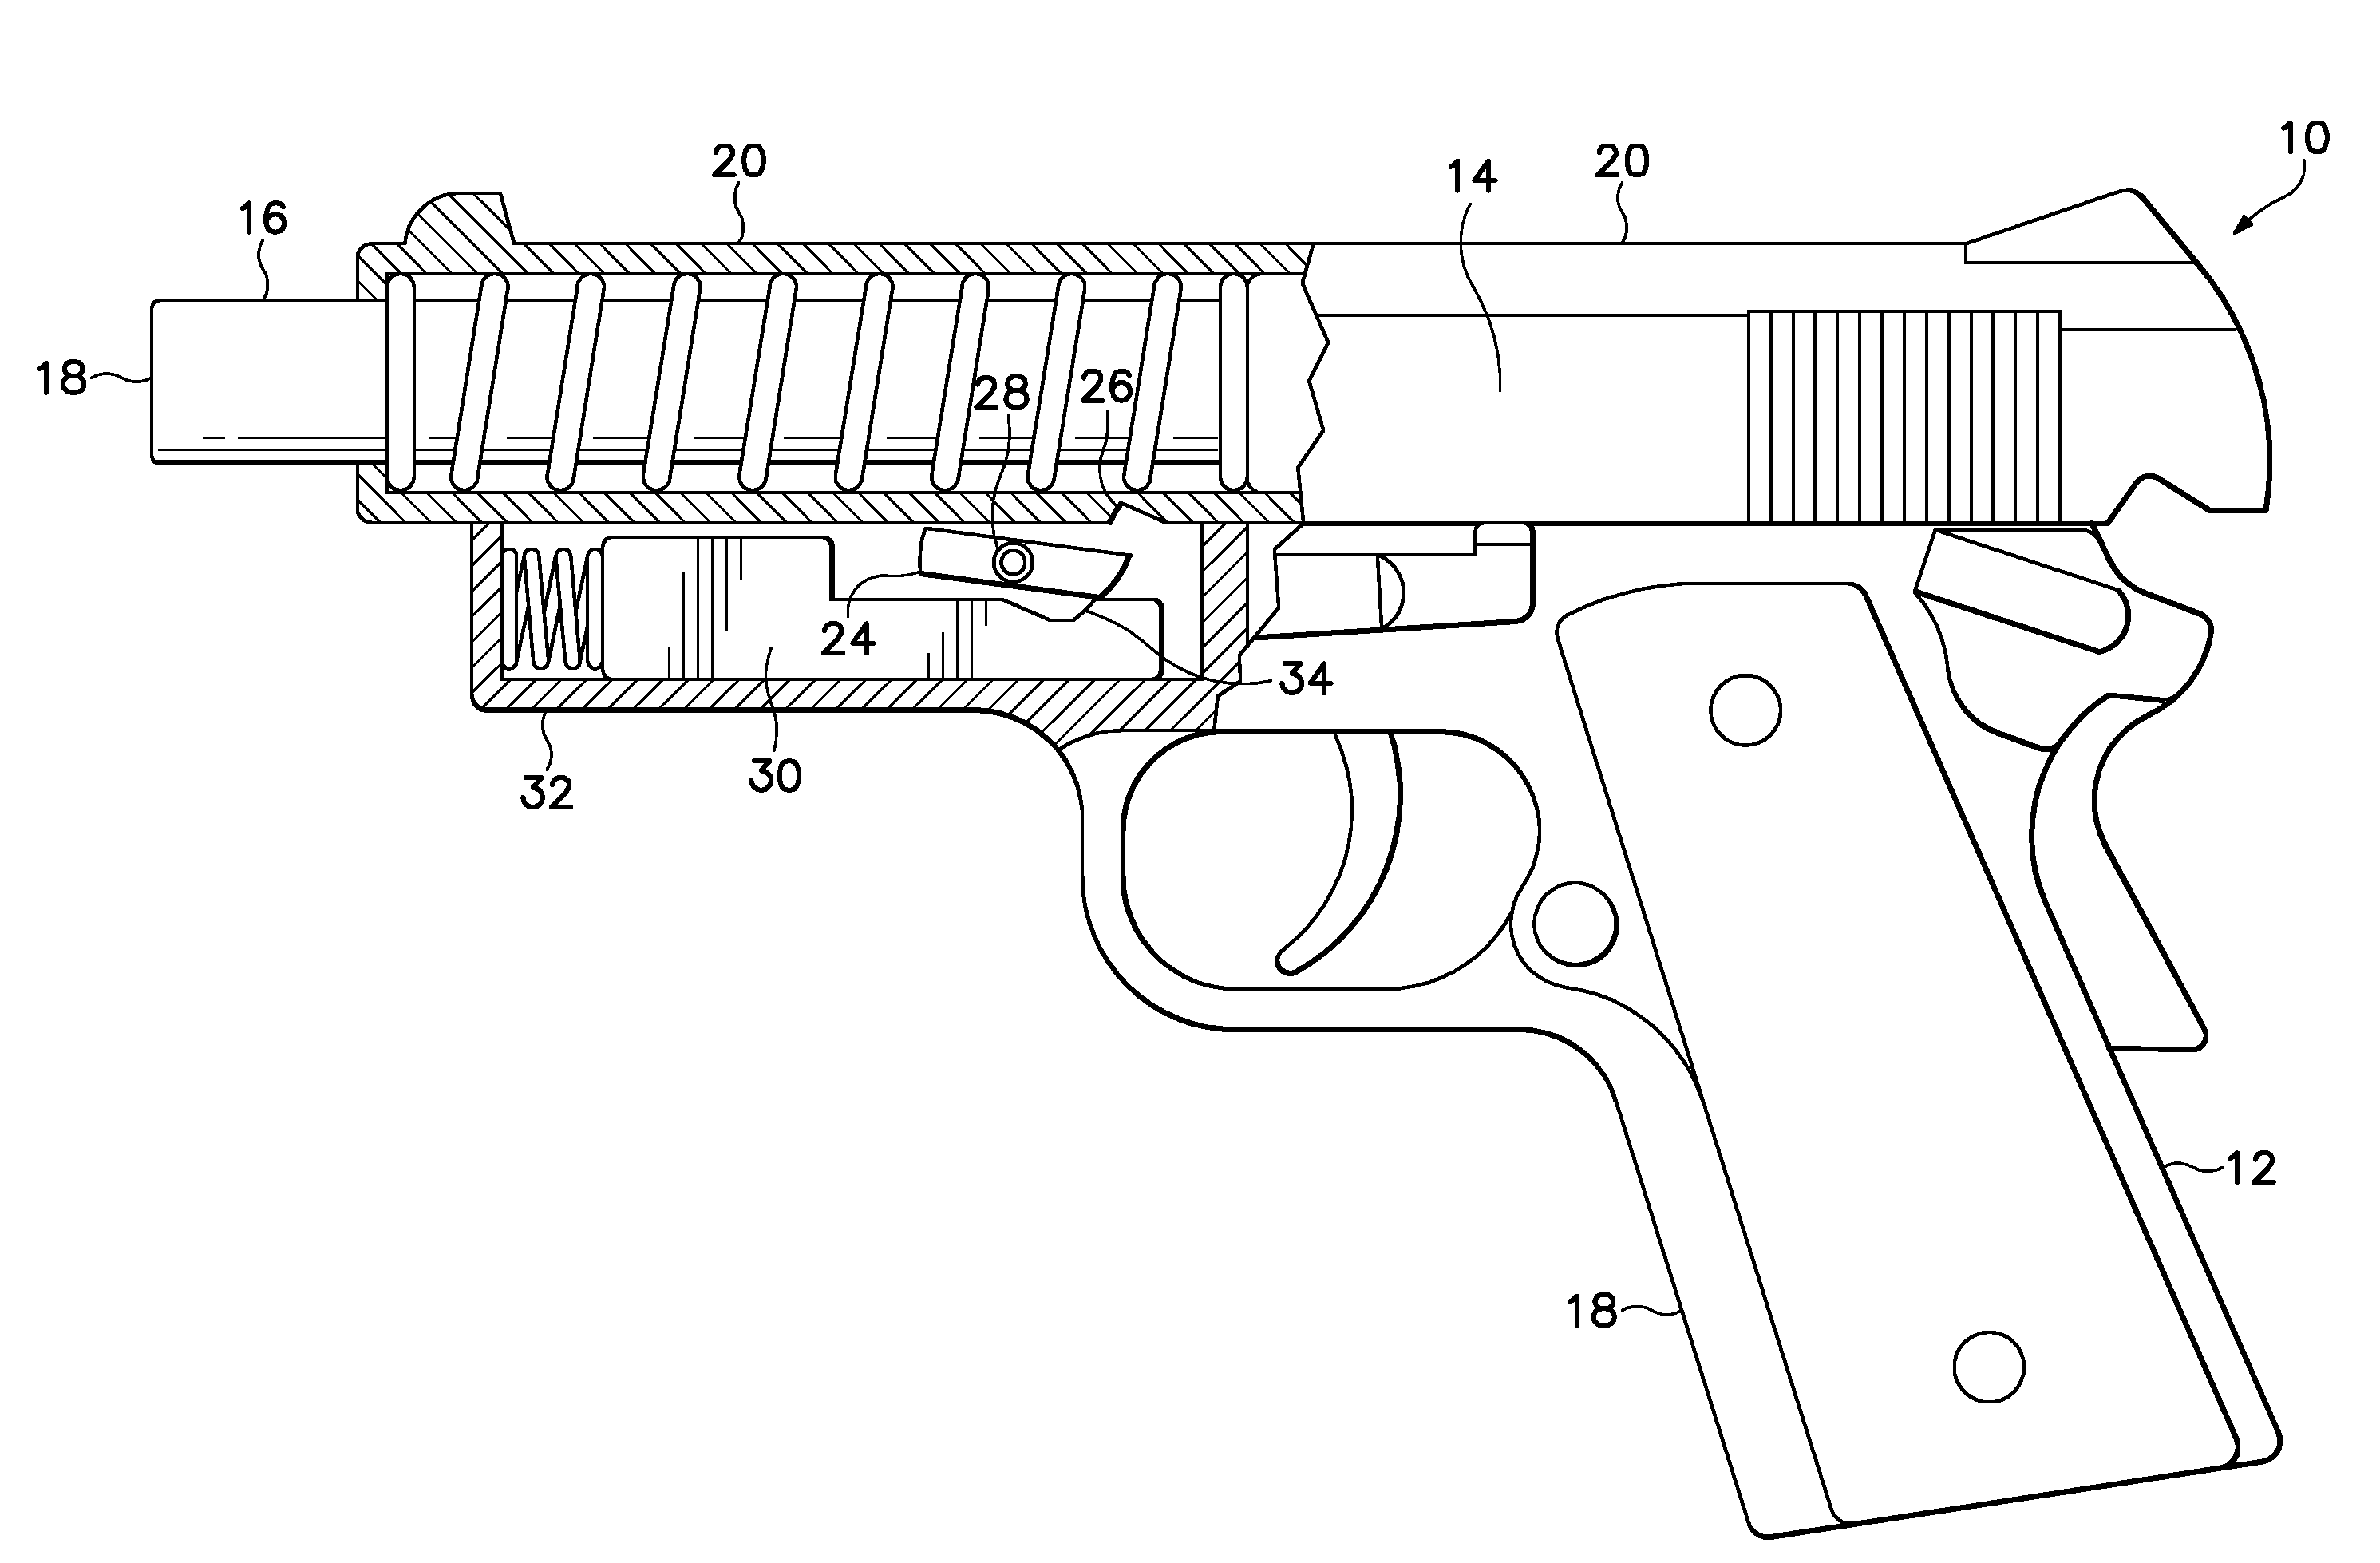 Self-loading Firearm